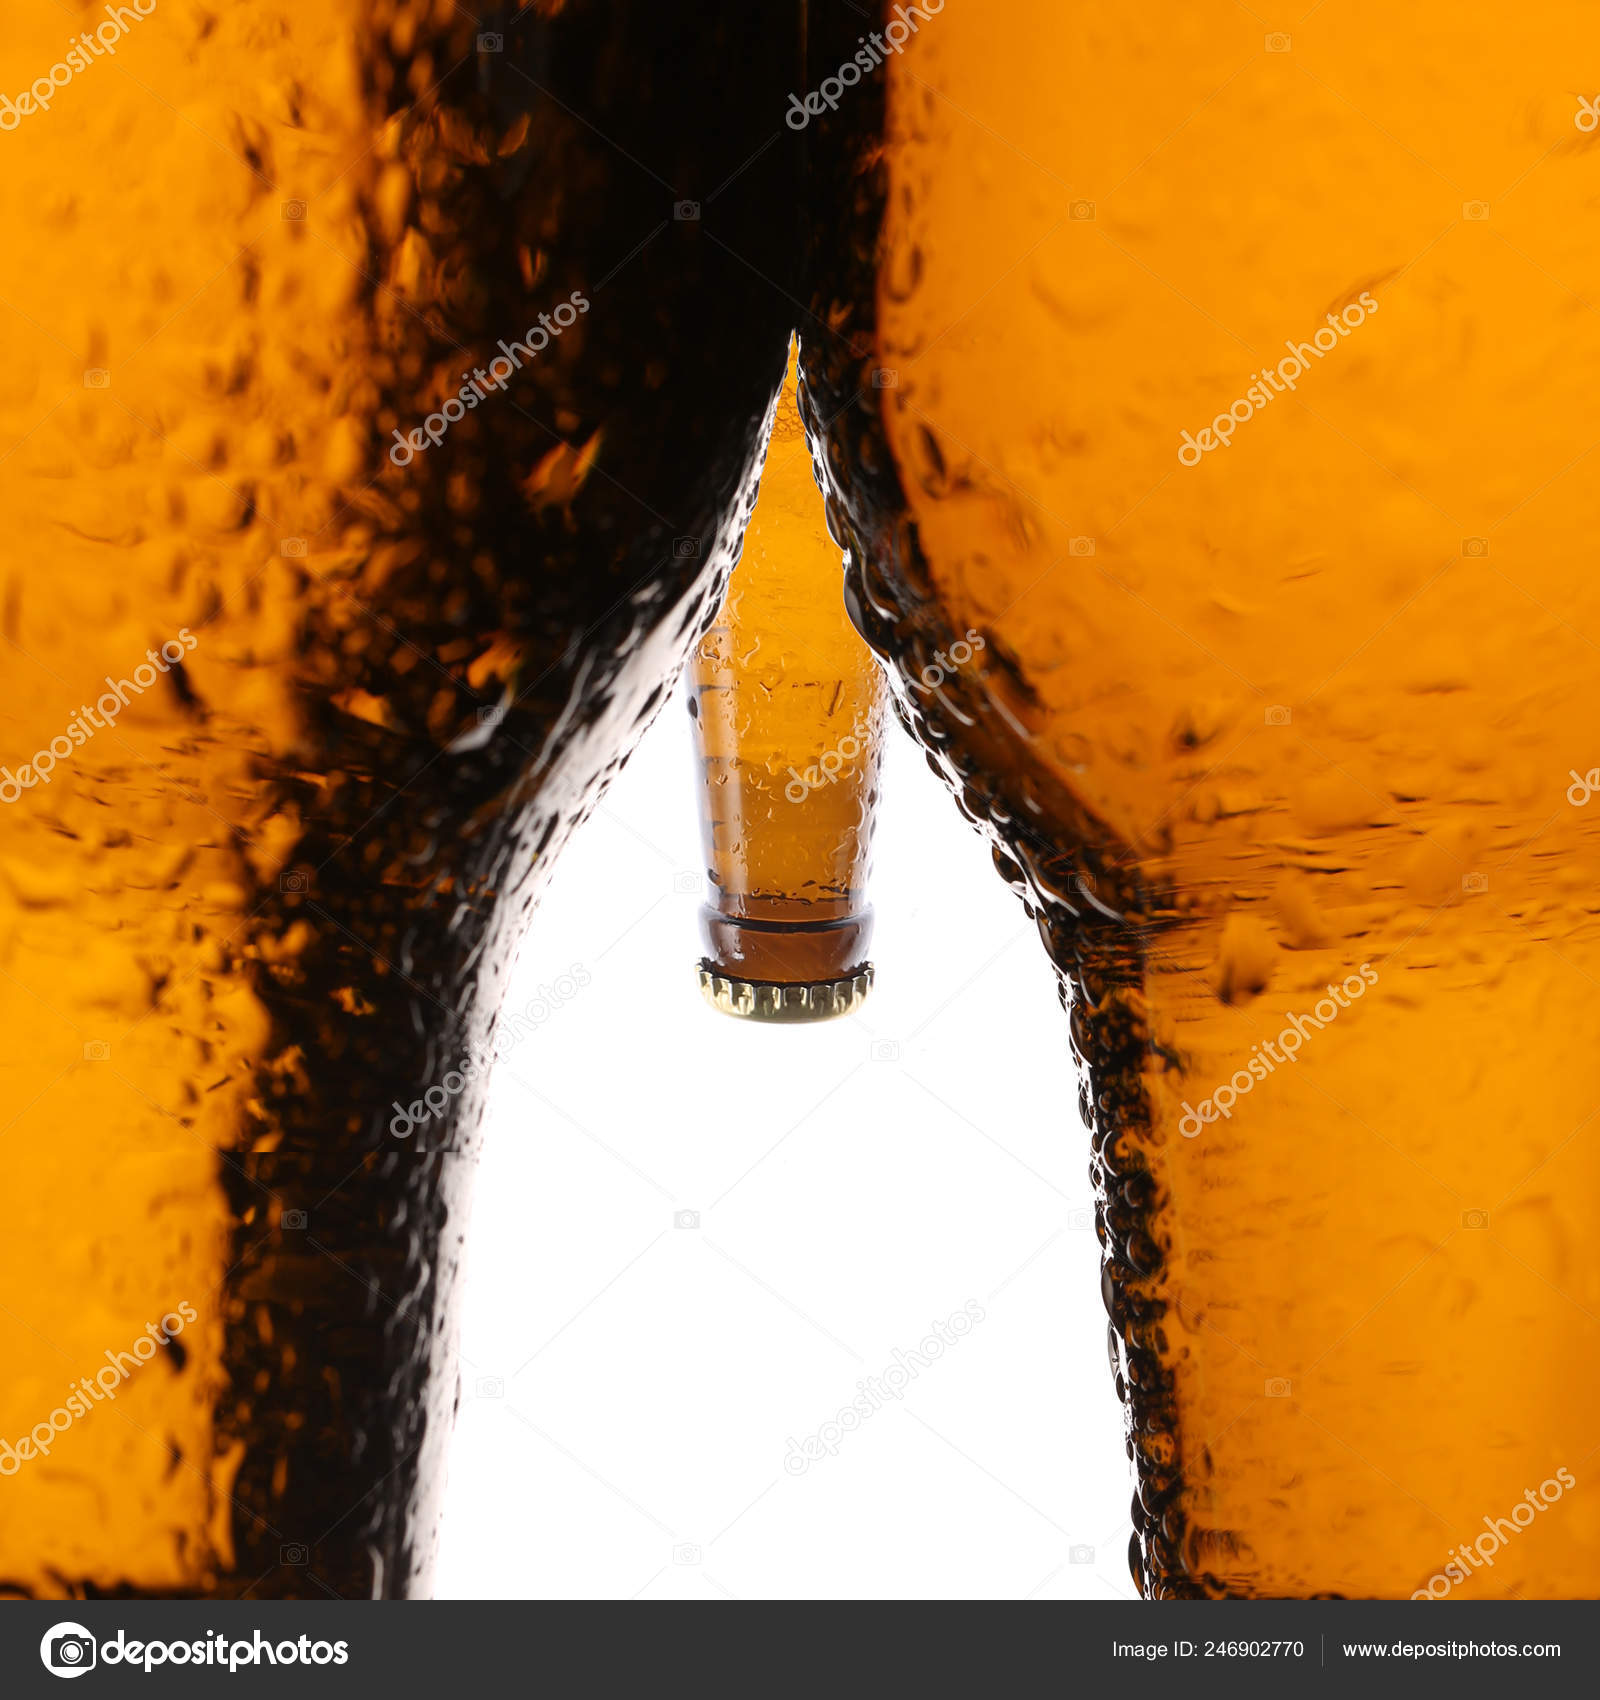 https://st4.depositphotos.com/7570388/24690/i/1600/depositphotos_246902770-stock-photo-penis-shaped-beer-bottle.jpg